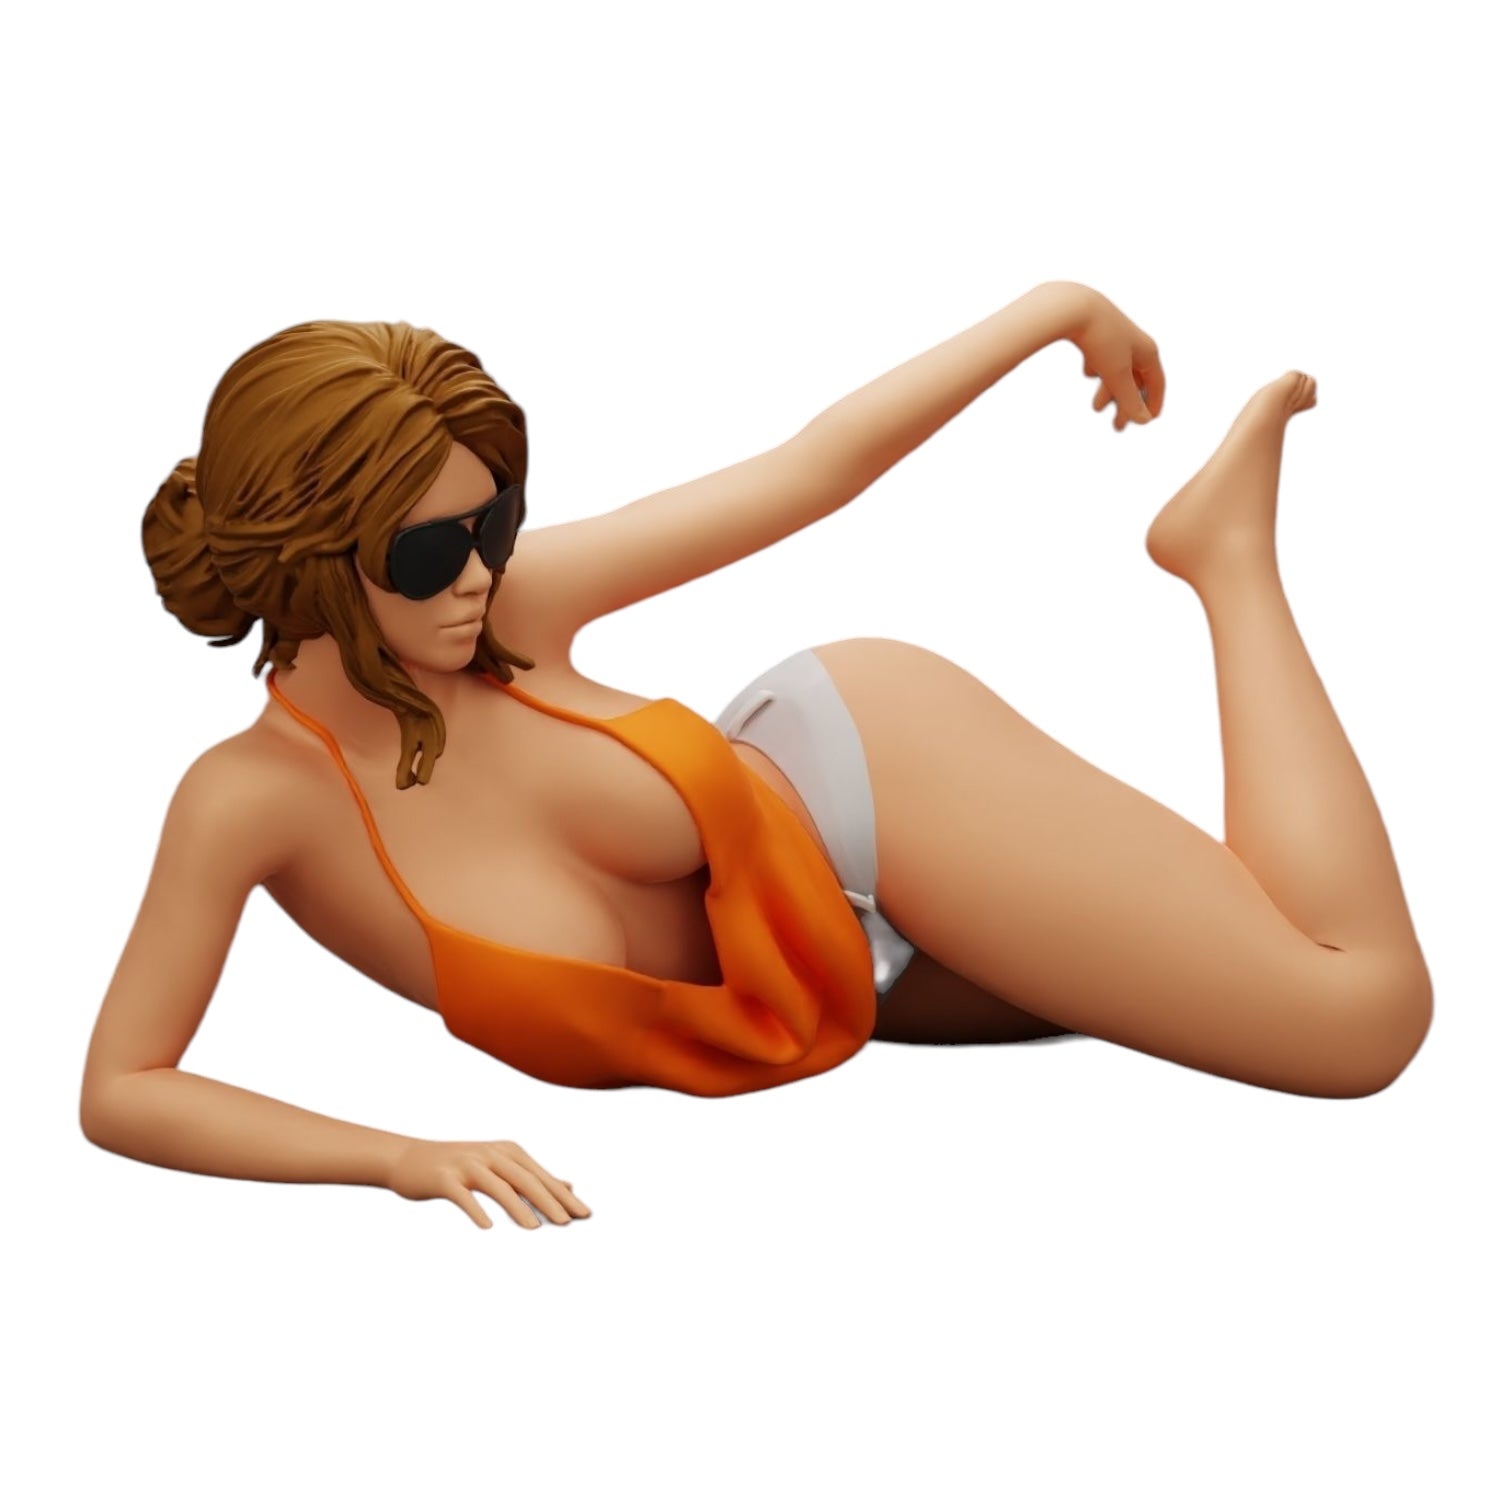 Diorama Modellbau Produktfoto 0: Sexy Mädchen mit Sonnenbrille und Bikini am Sandstrand (Ref Nr. A33)